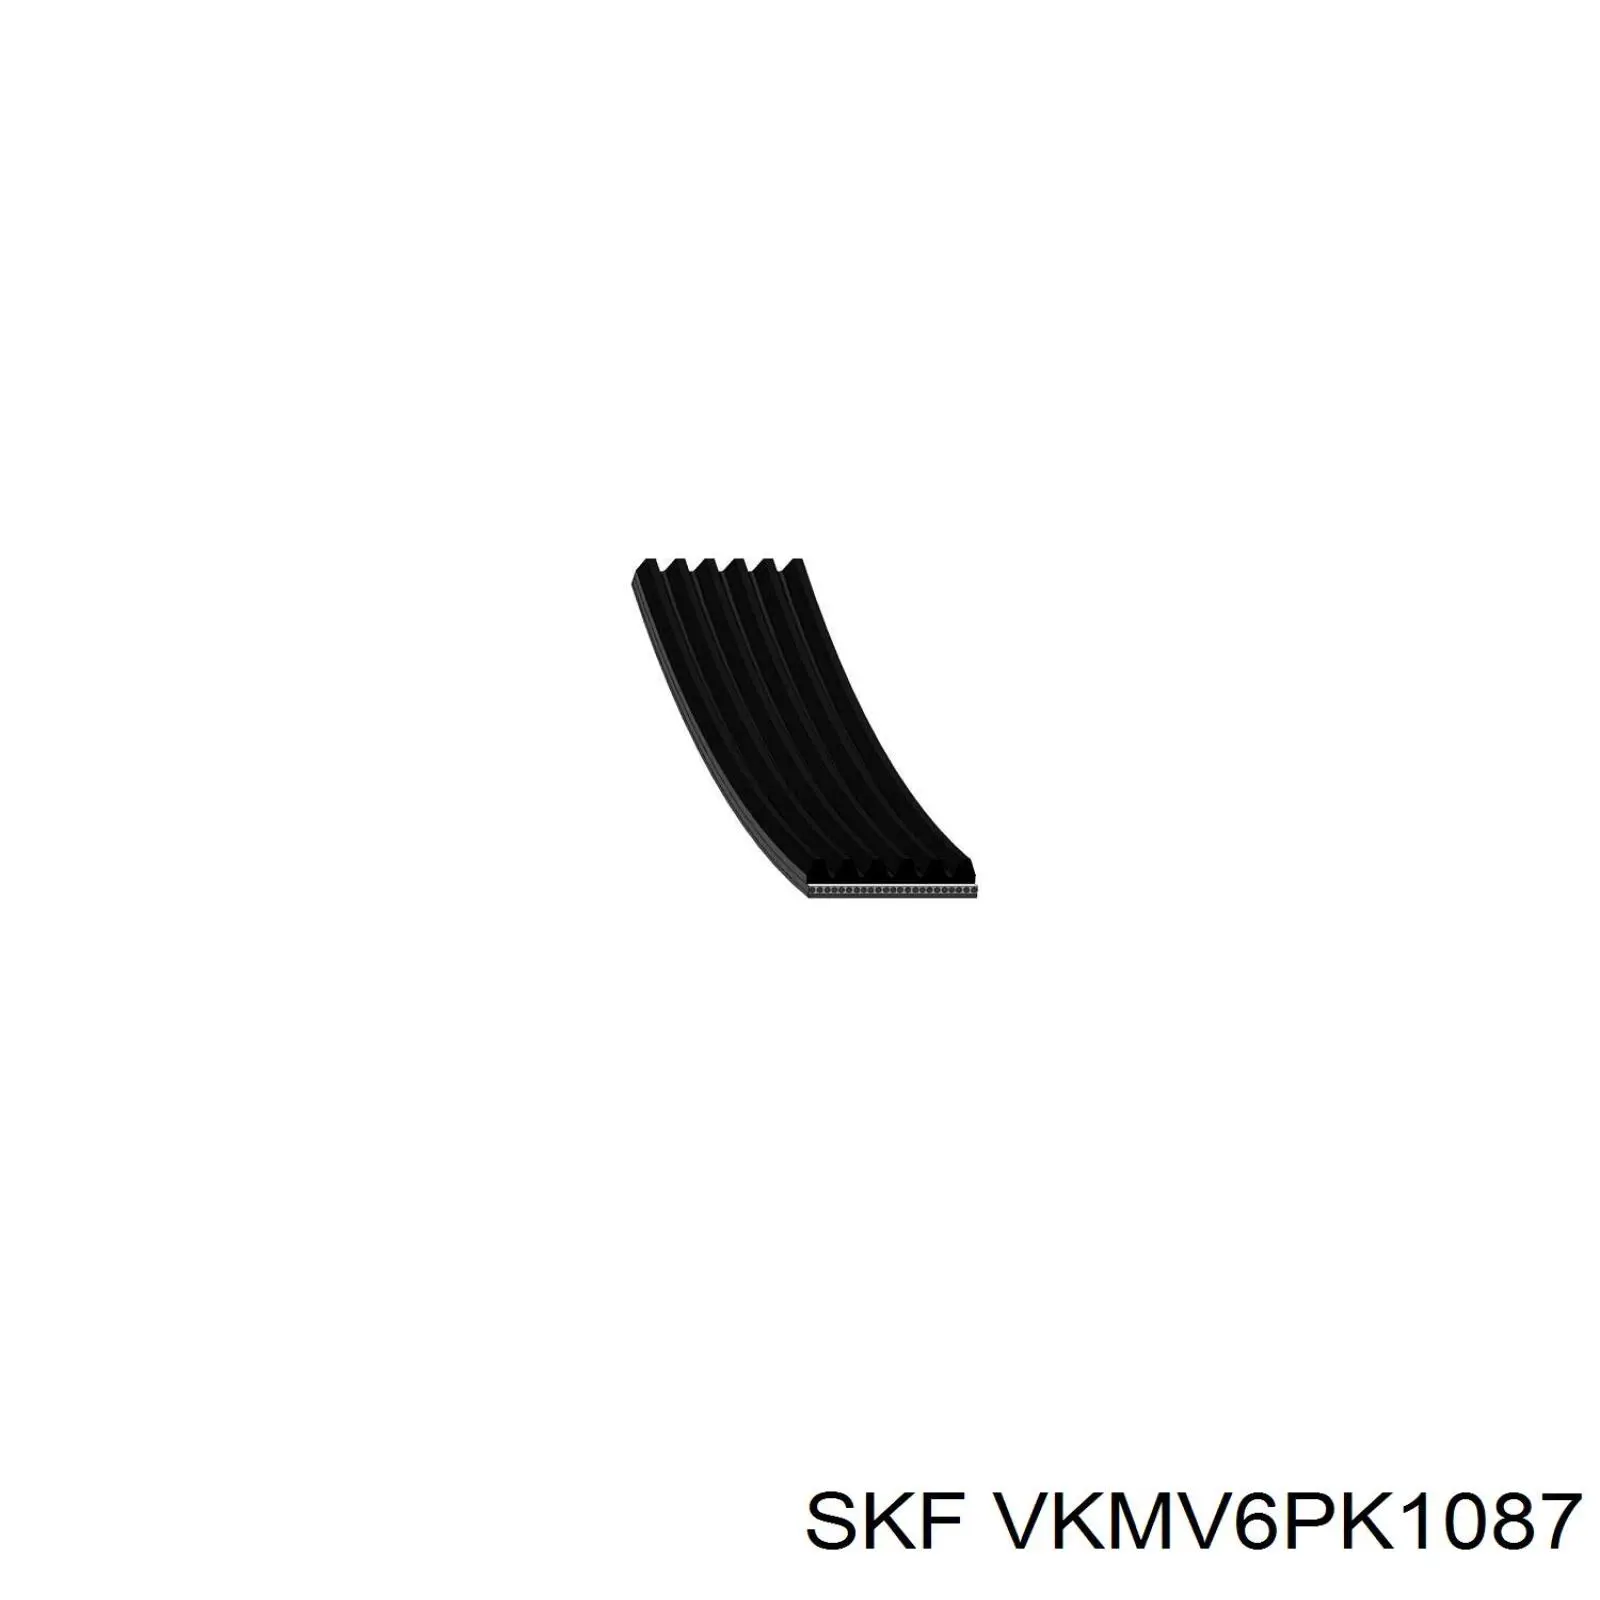 VKMV6PK1087 SKF correa trapezoidal